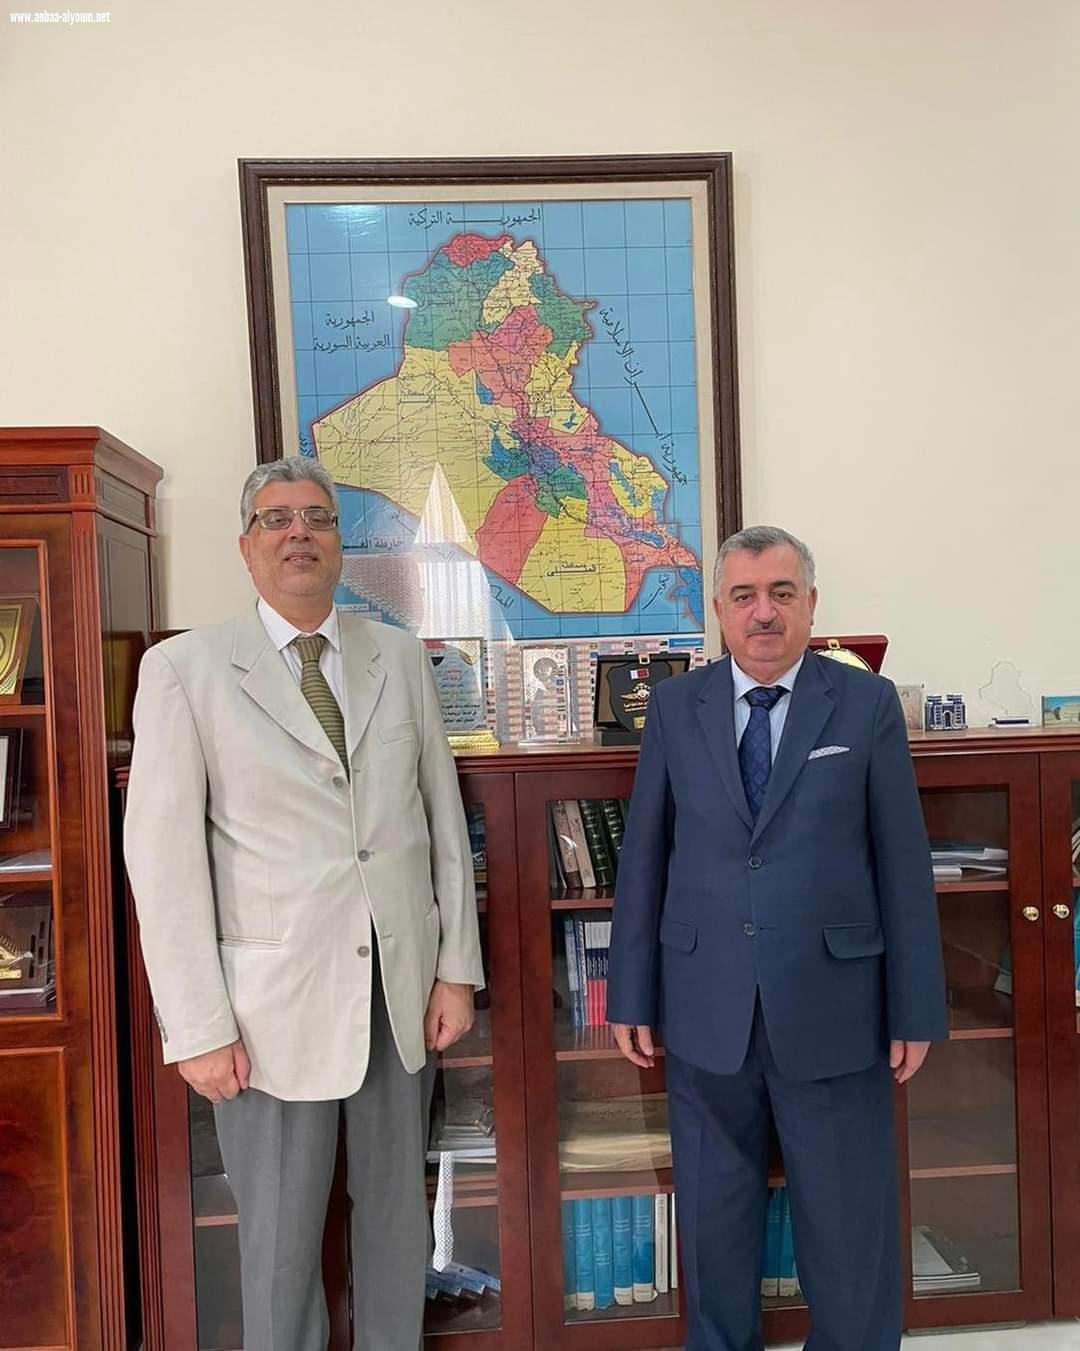 السفير عمر البرزنجي يستقبل الطبيب الأخصائي العراقي المتميز في قطر الدكتور عبد القادر العبيدي